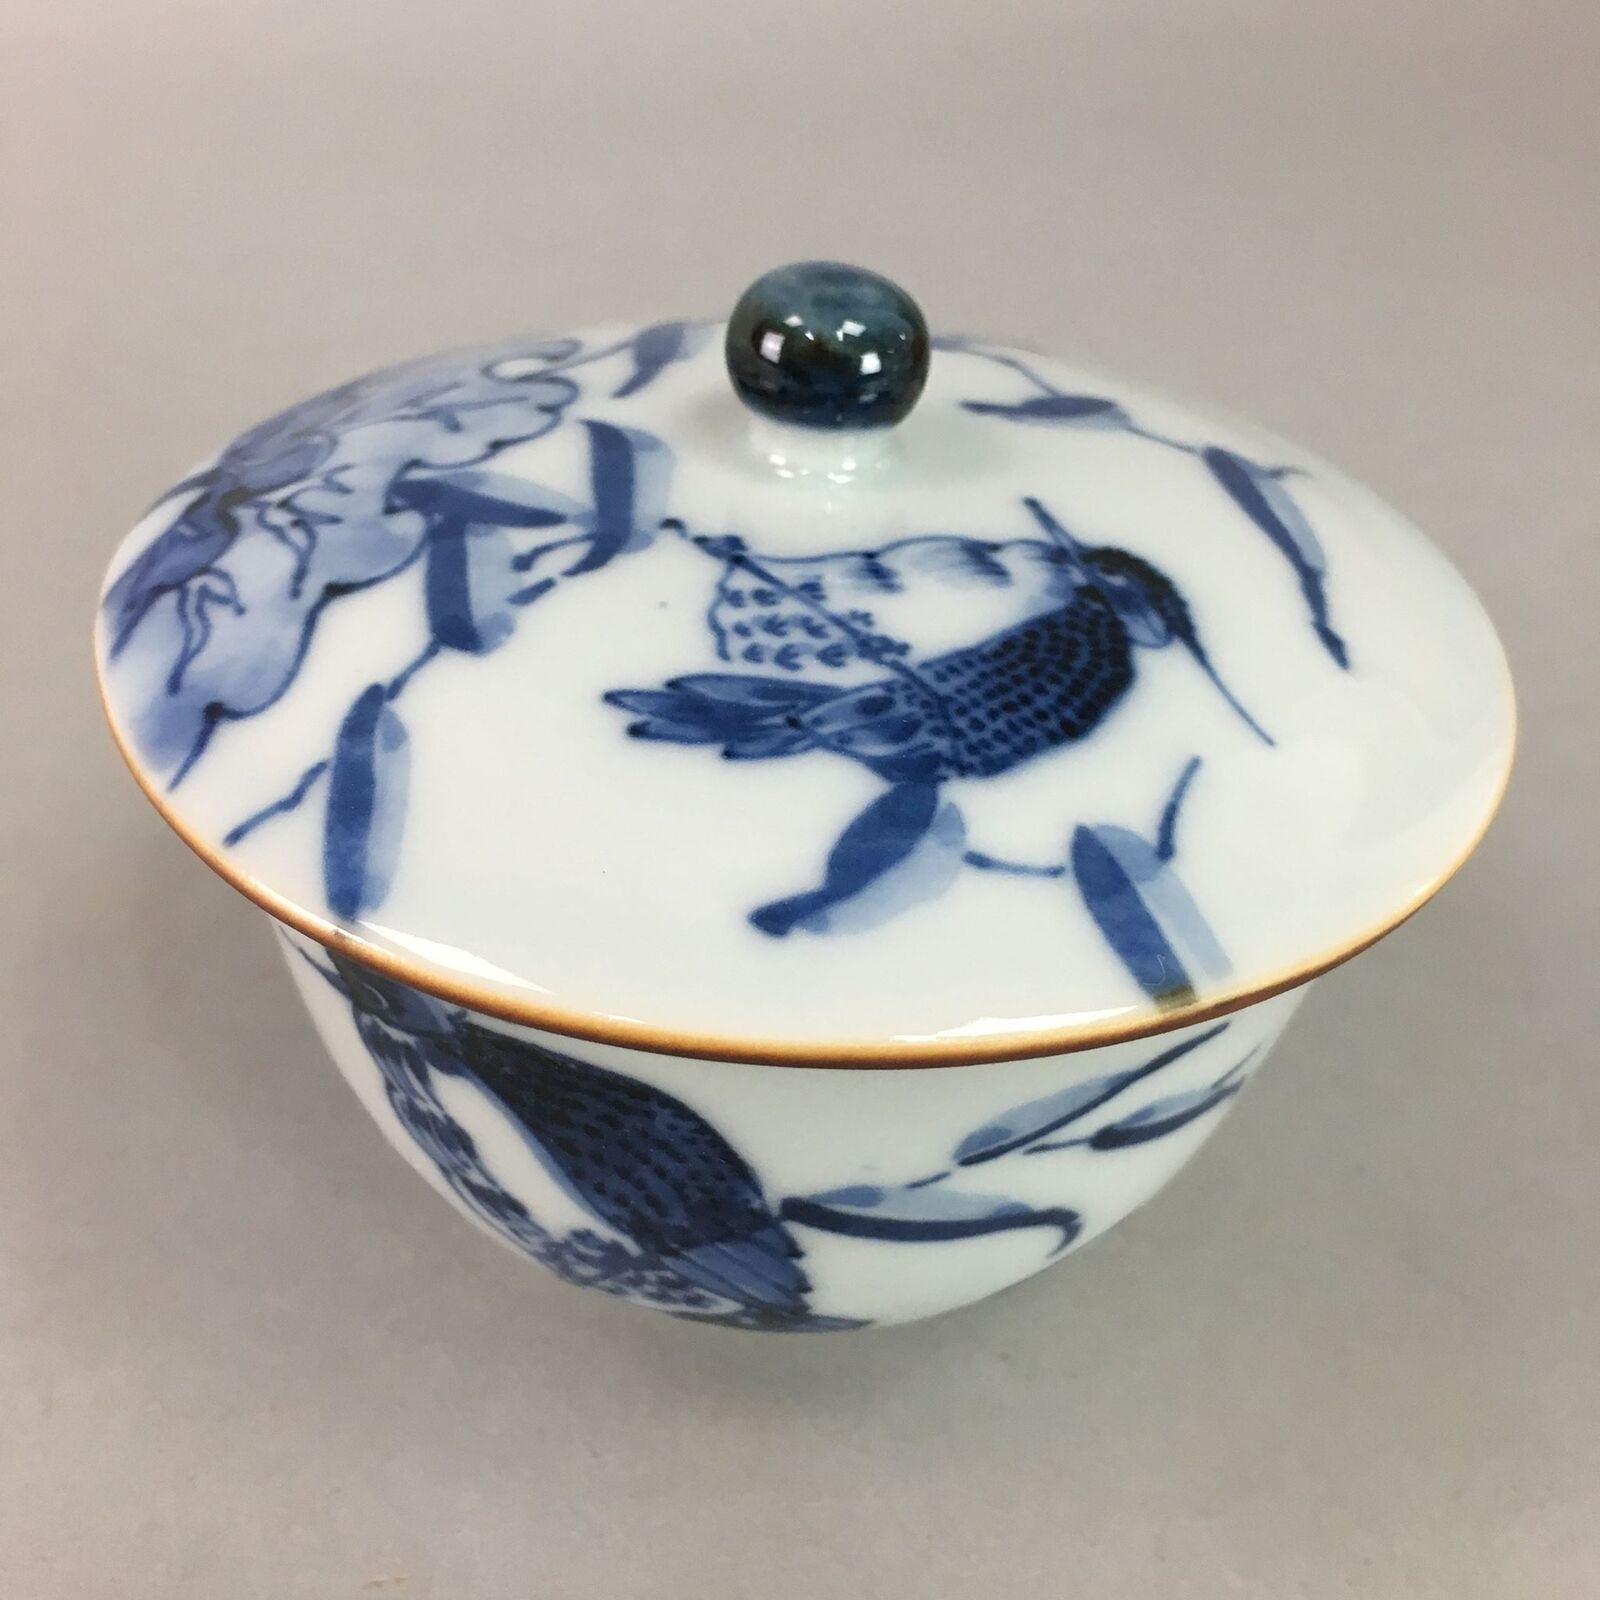 Japanese Porcelain Lidded Teacup Vtg Yunomi Sometsuke Blue White Bird Fowl Qt59